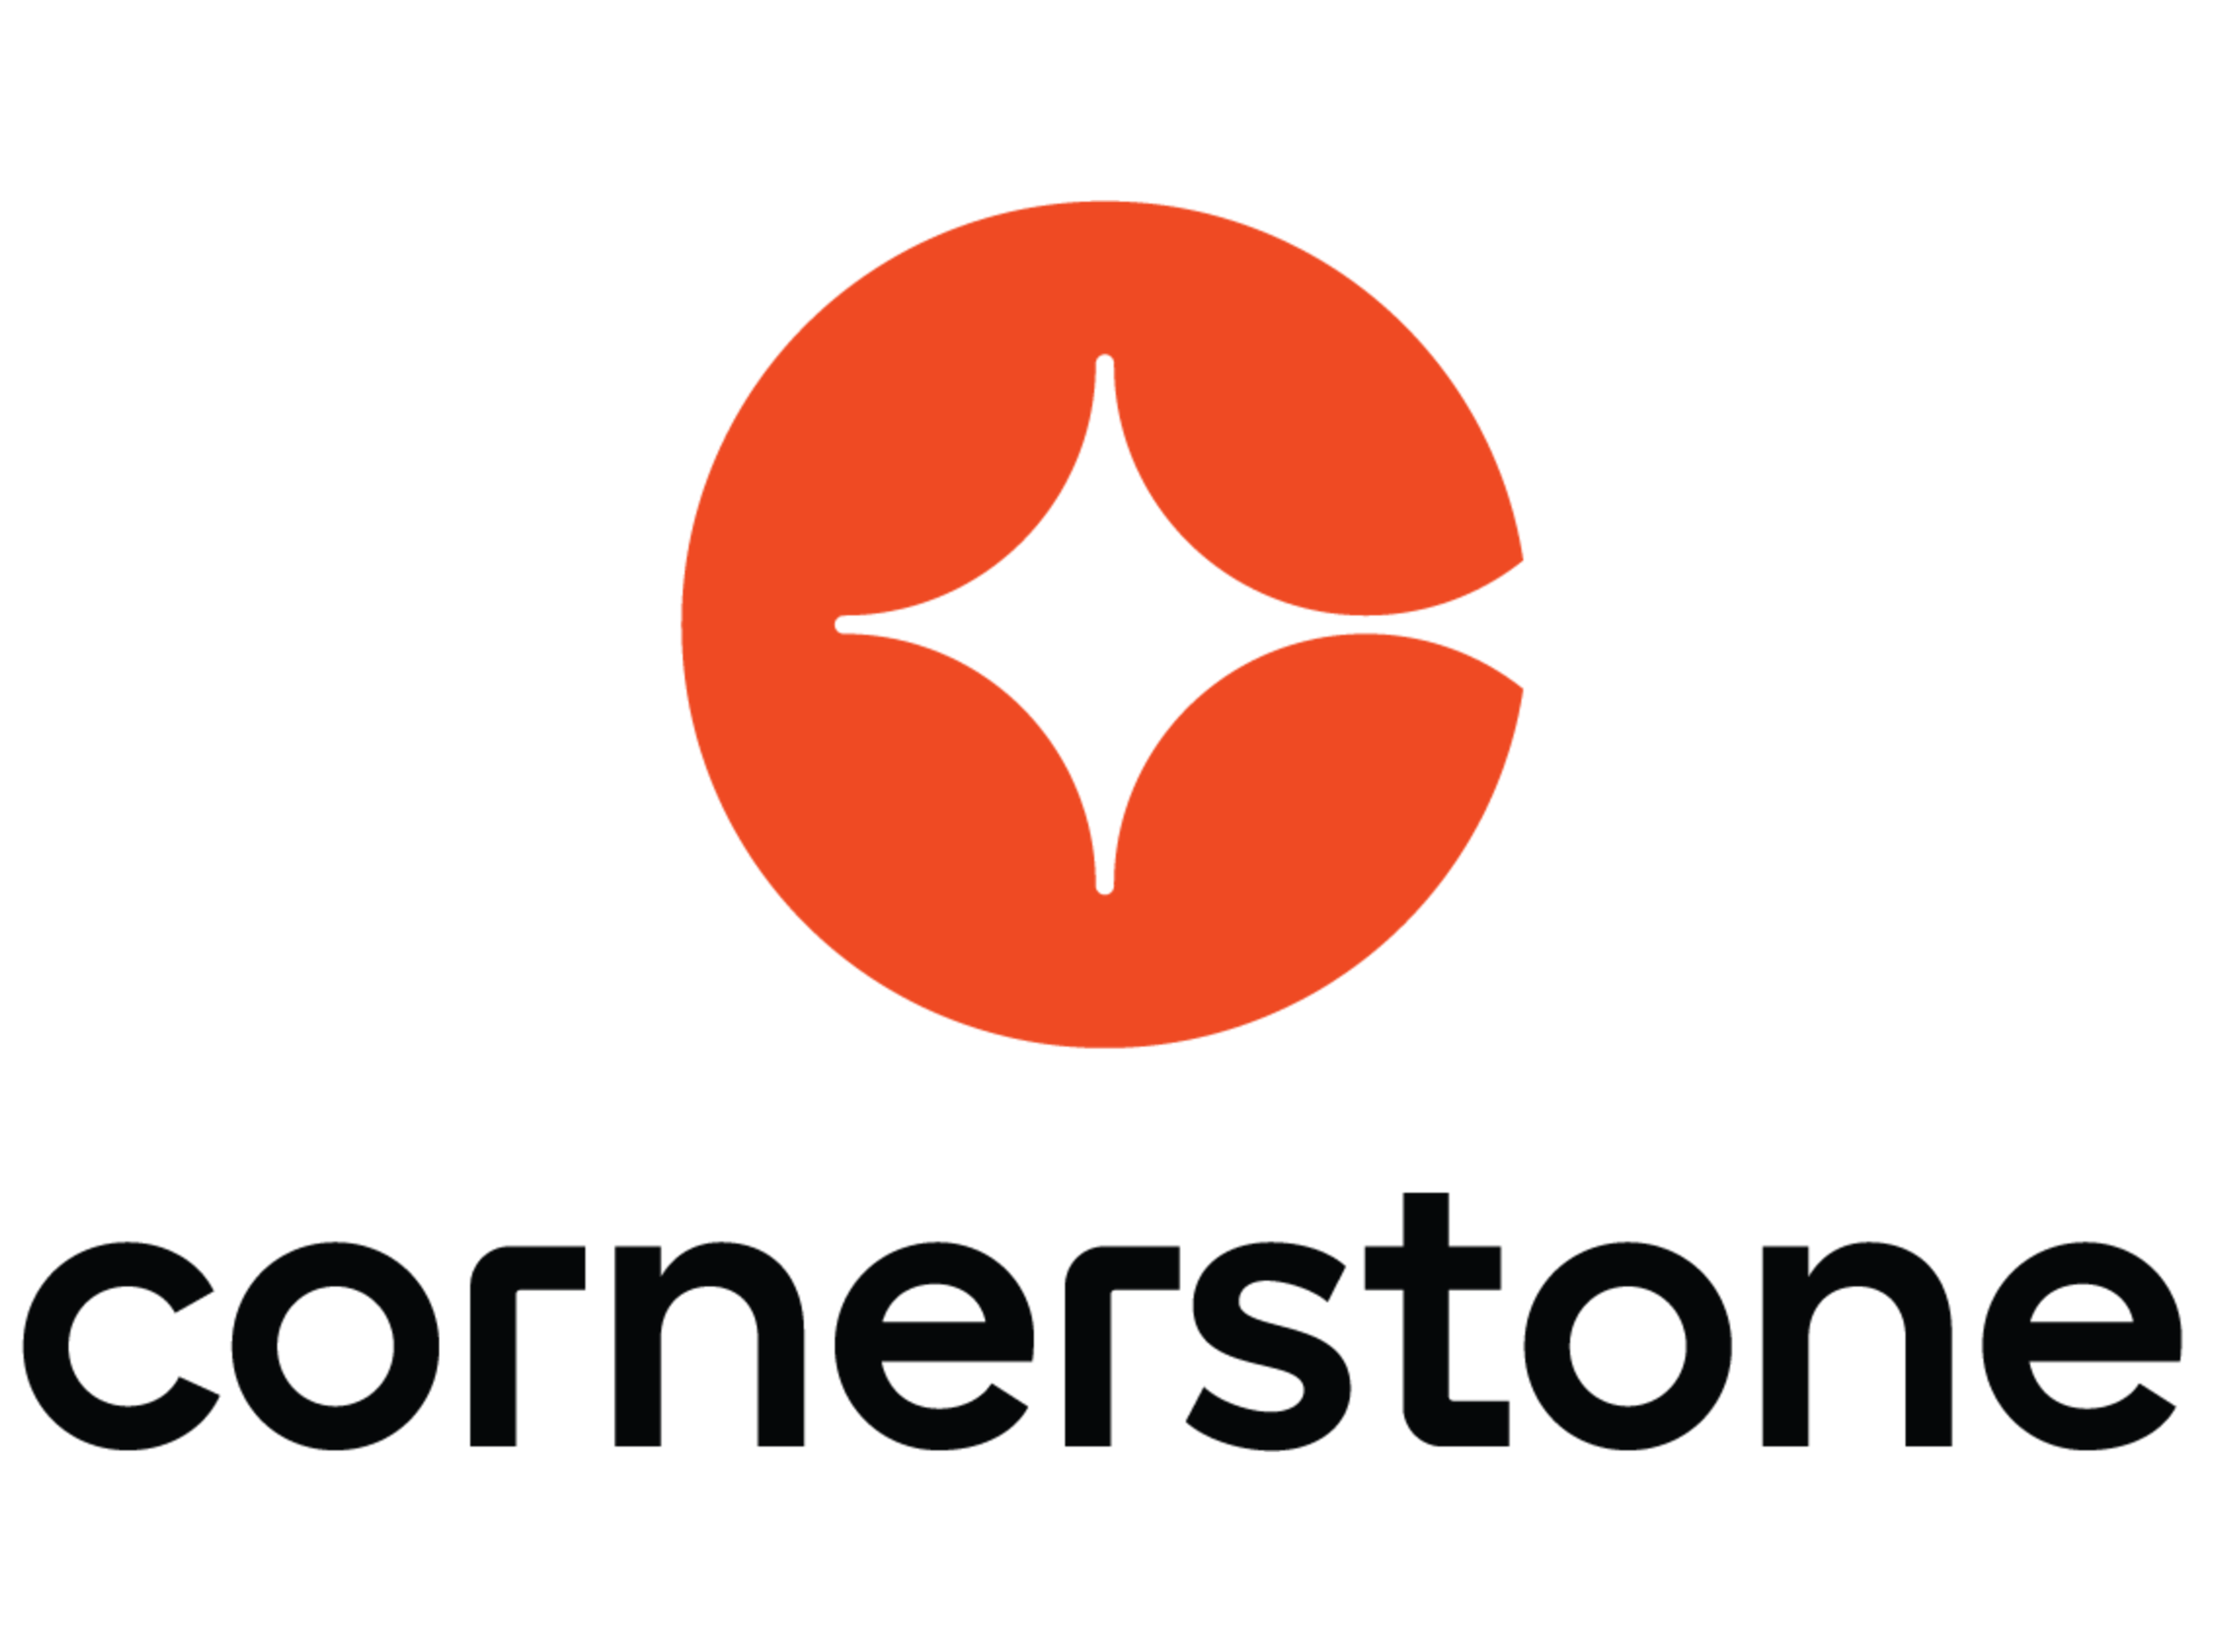 Cornerstone Website